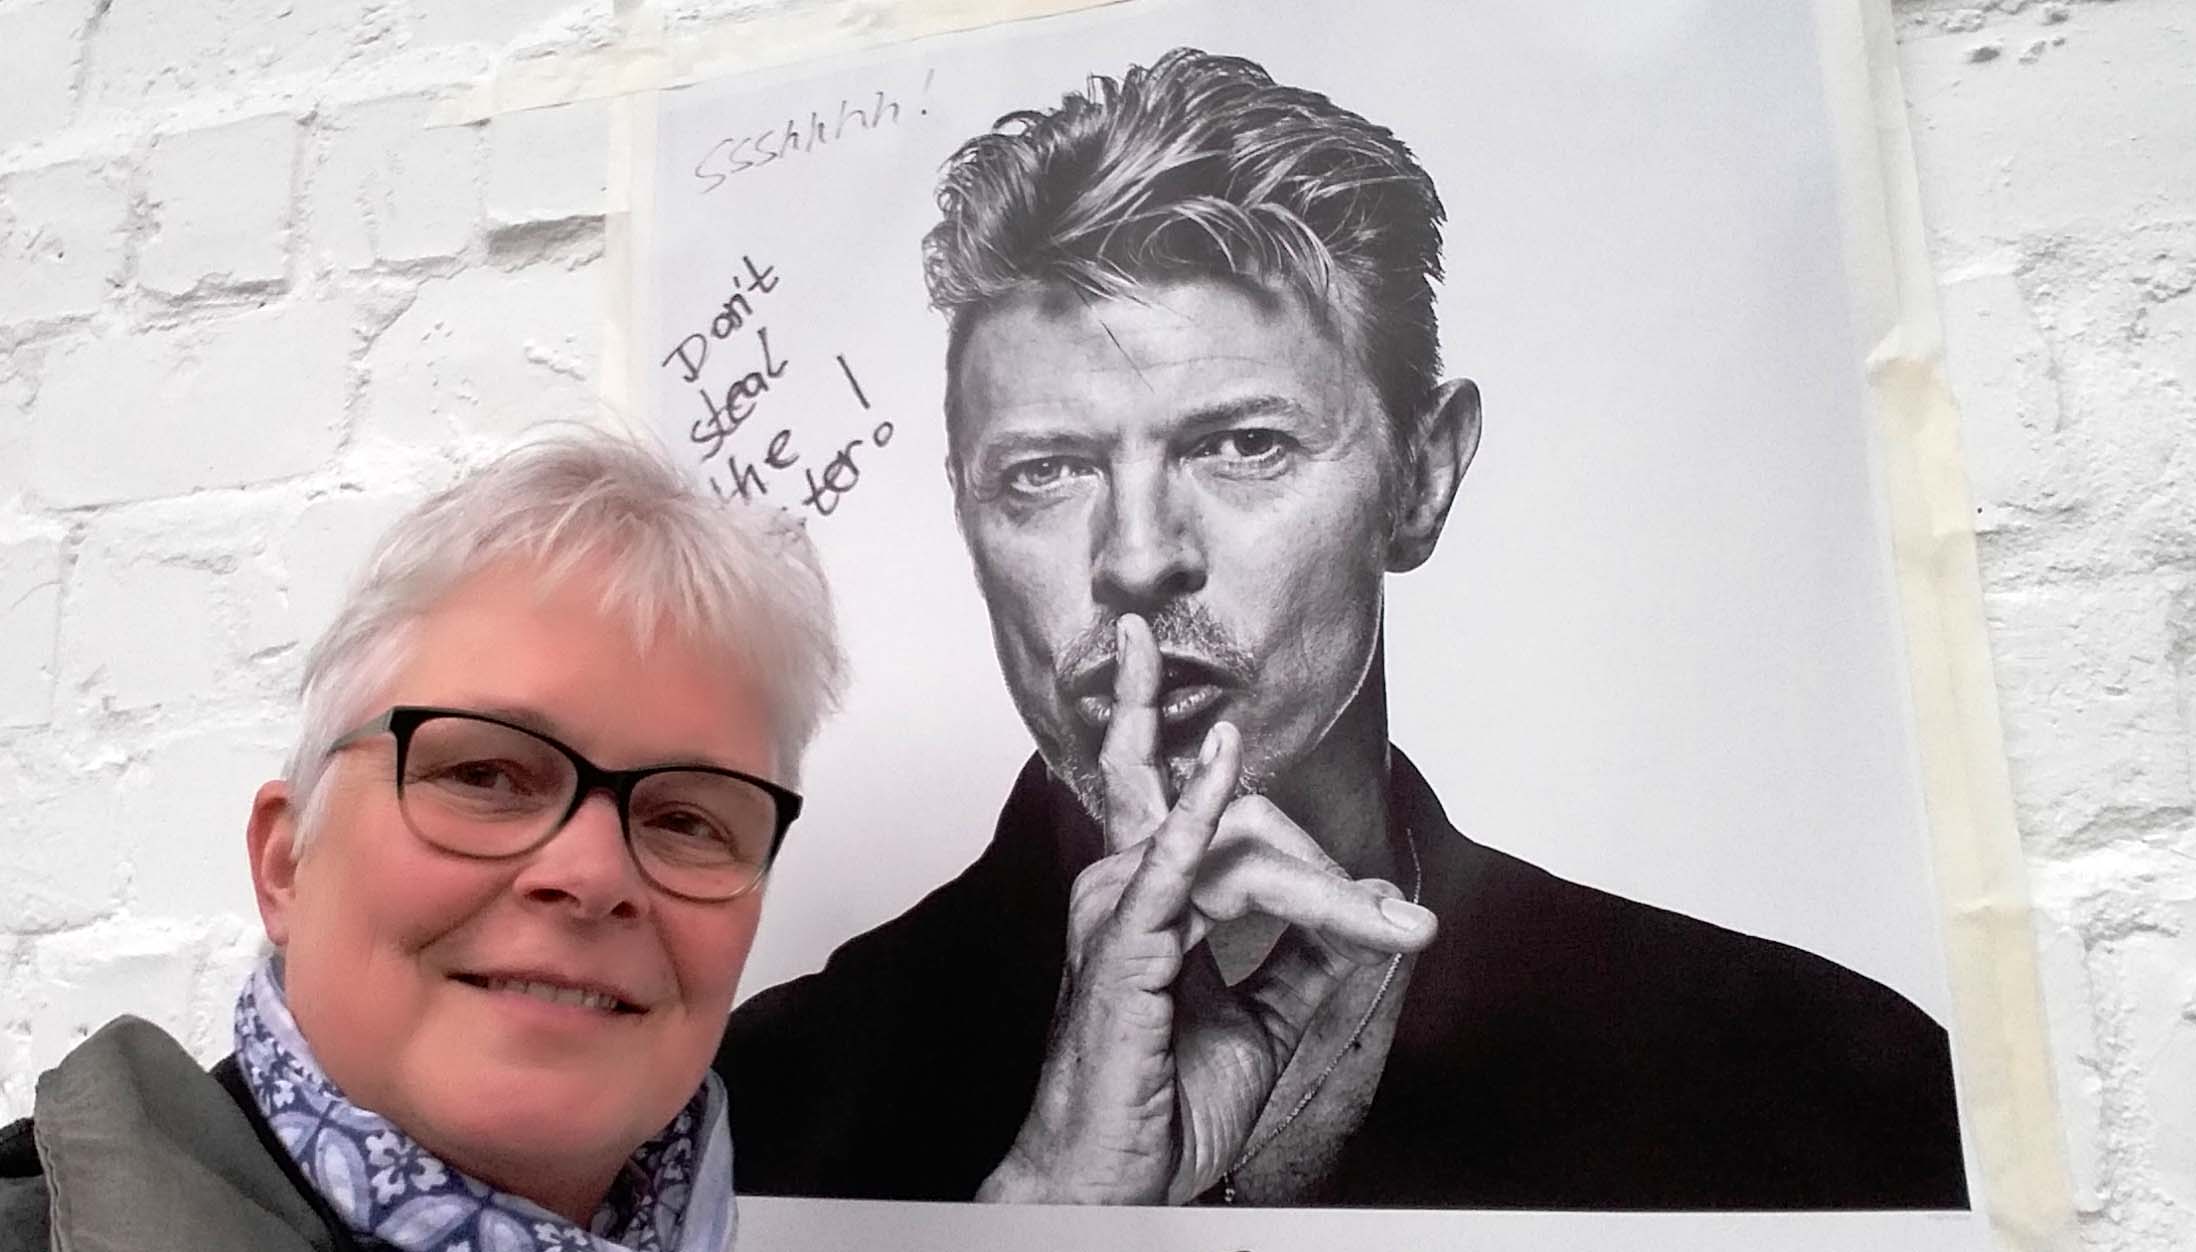 Wilma-ontmoet-Bowie-in-berlijn-tijdens-fototentoobstelling